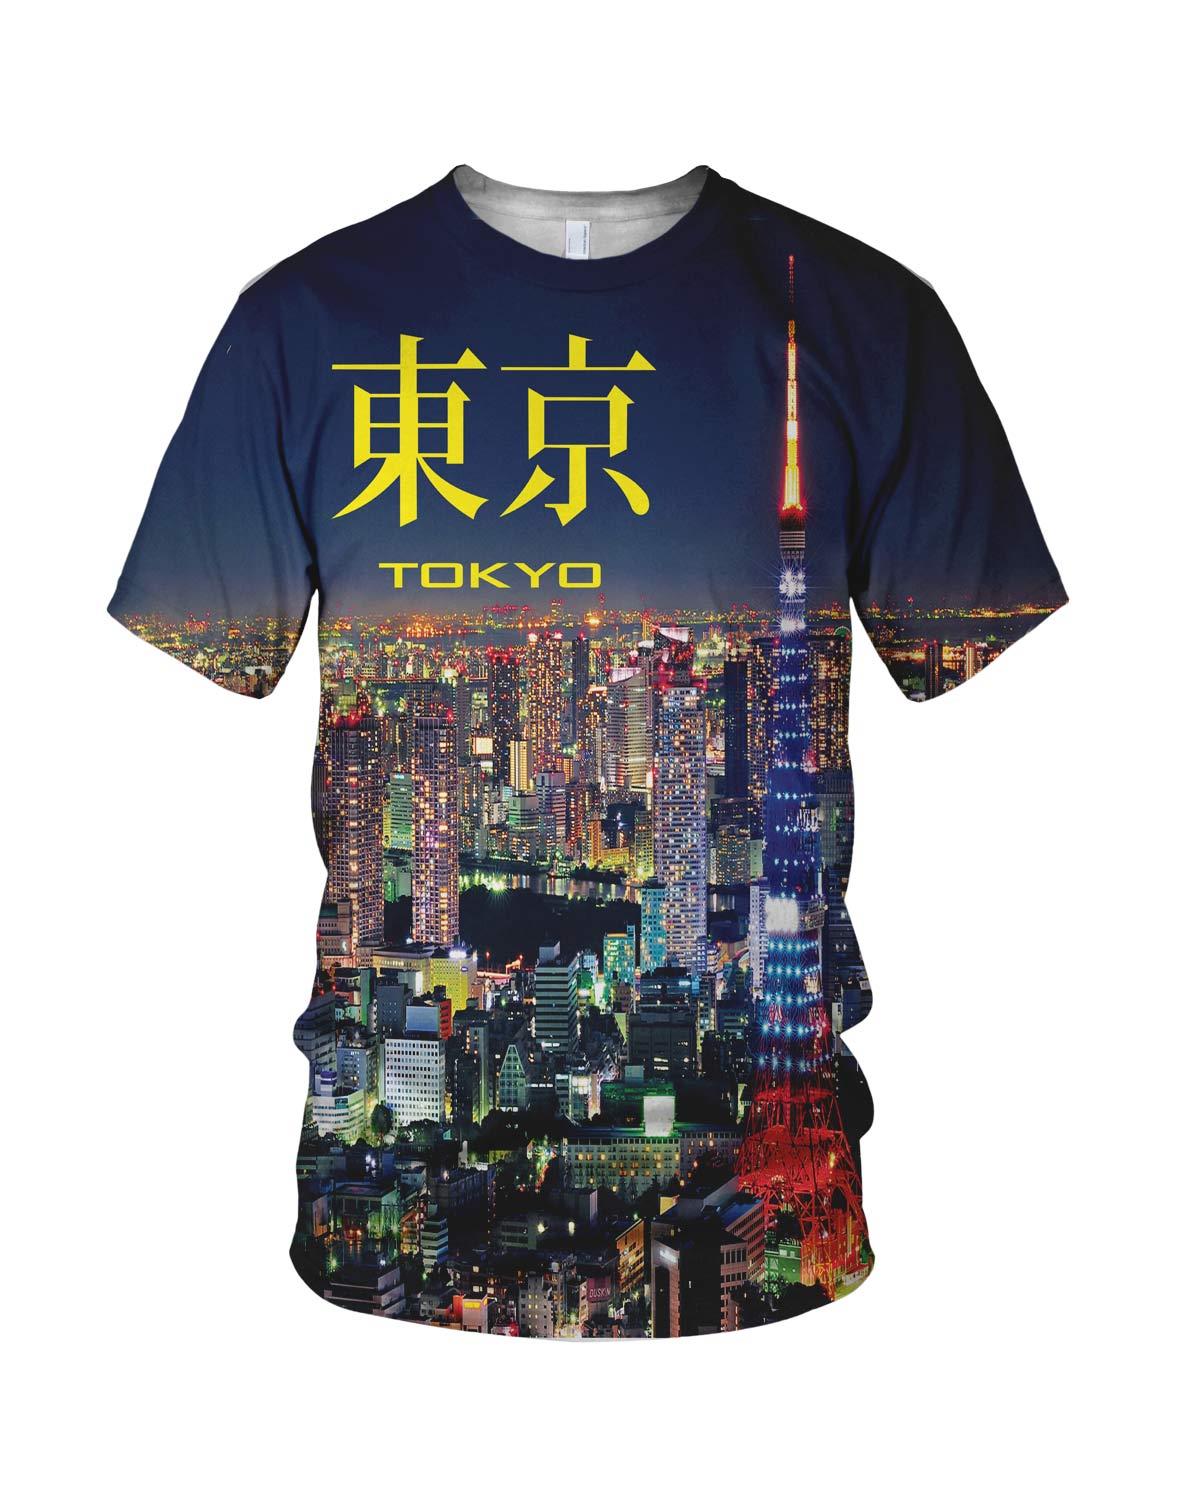 Tokyo City Lights Men's Fashion T Shirt, White, M